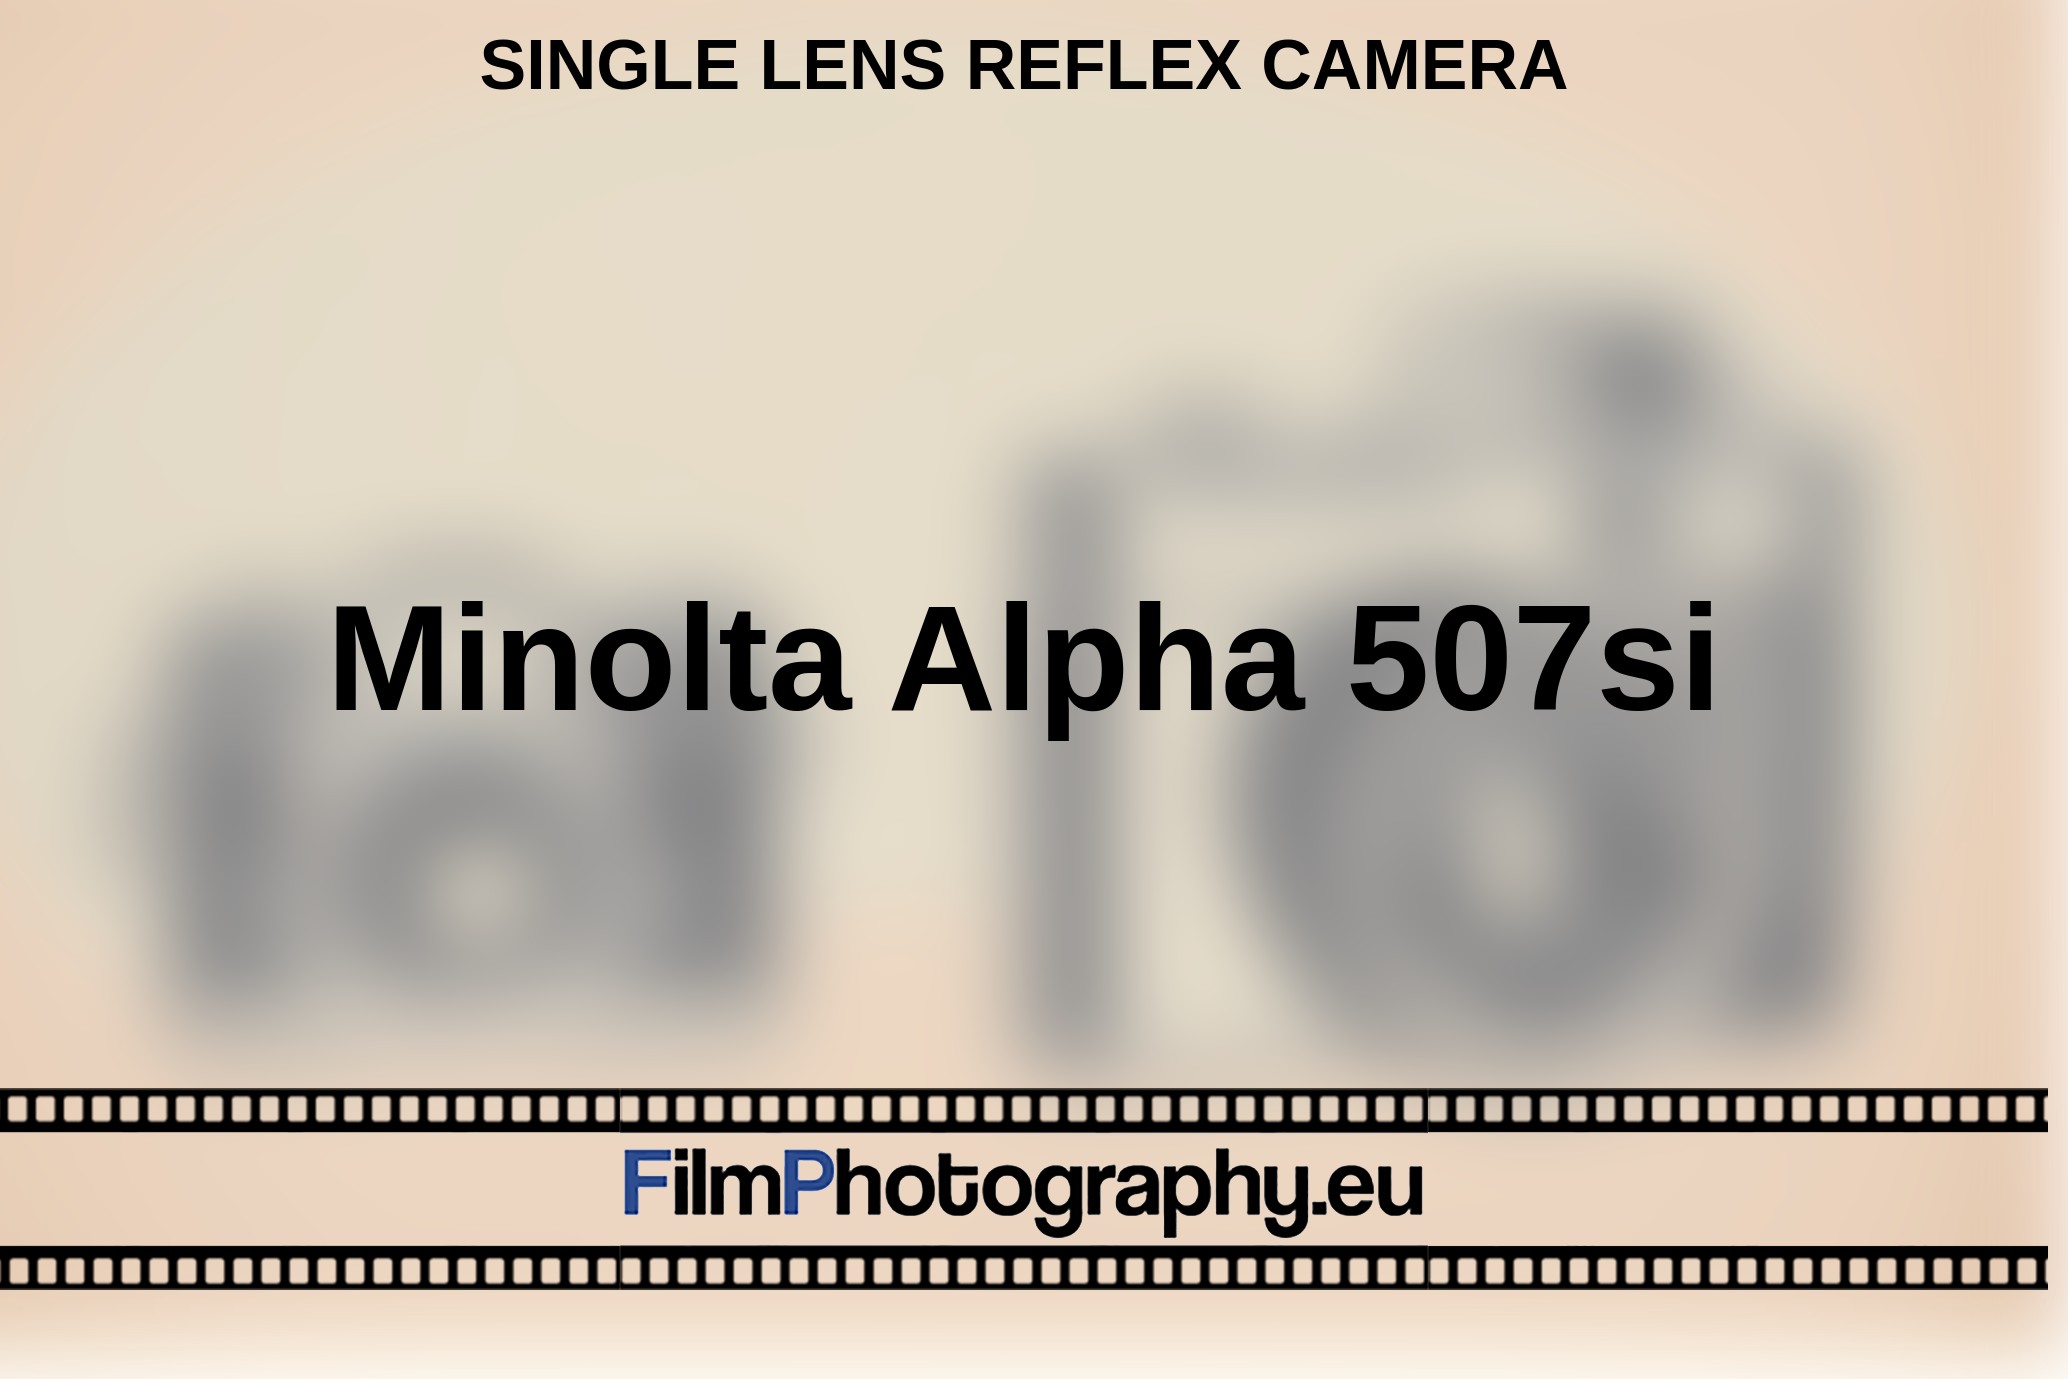 Minolta-Alpha-507si-single-lens-reflex-camera-bnv.jpg